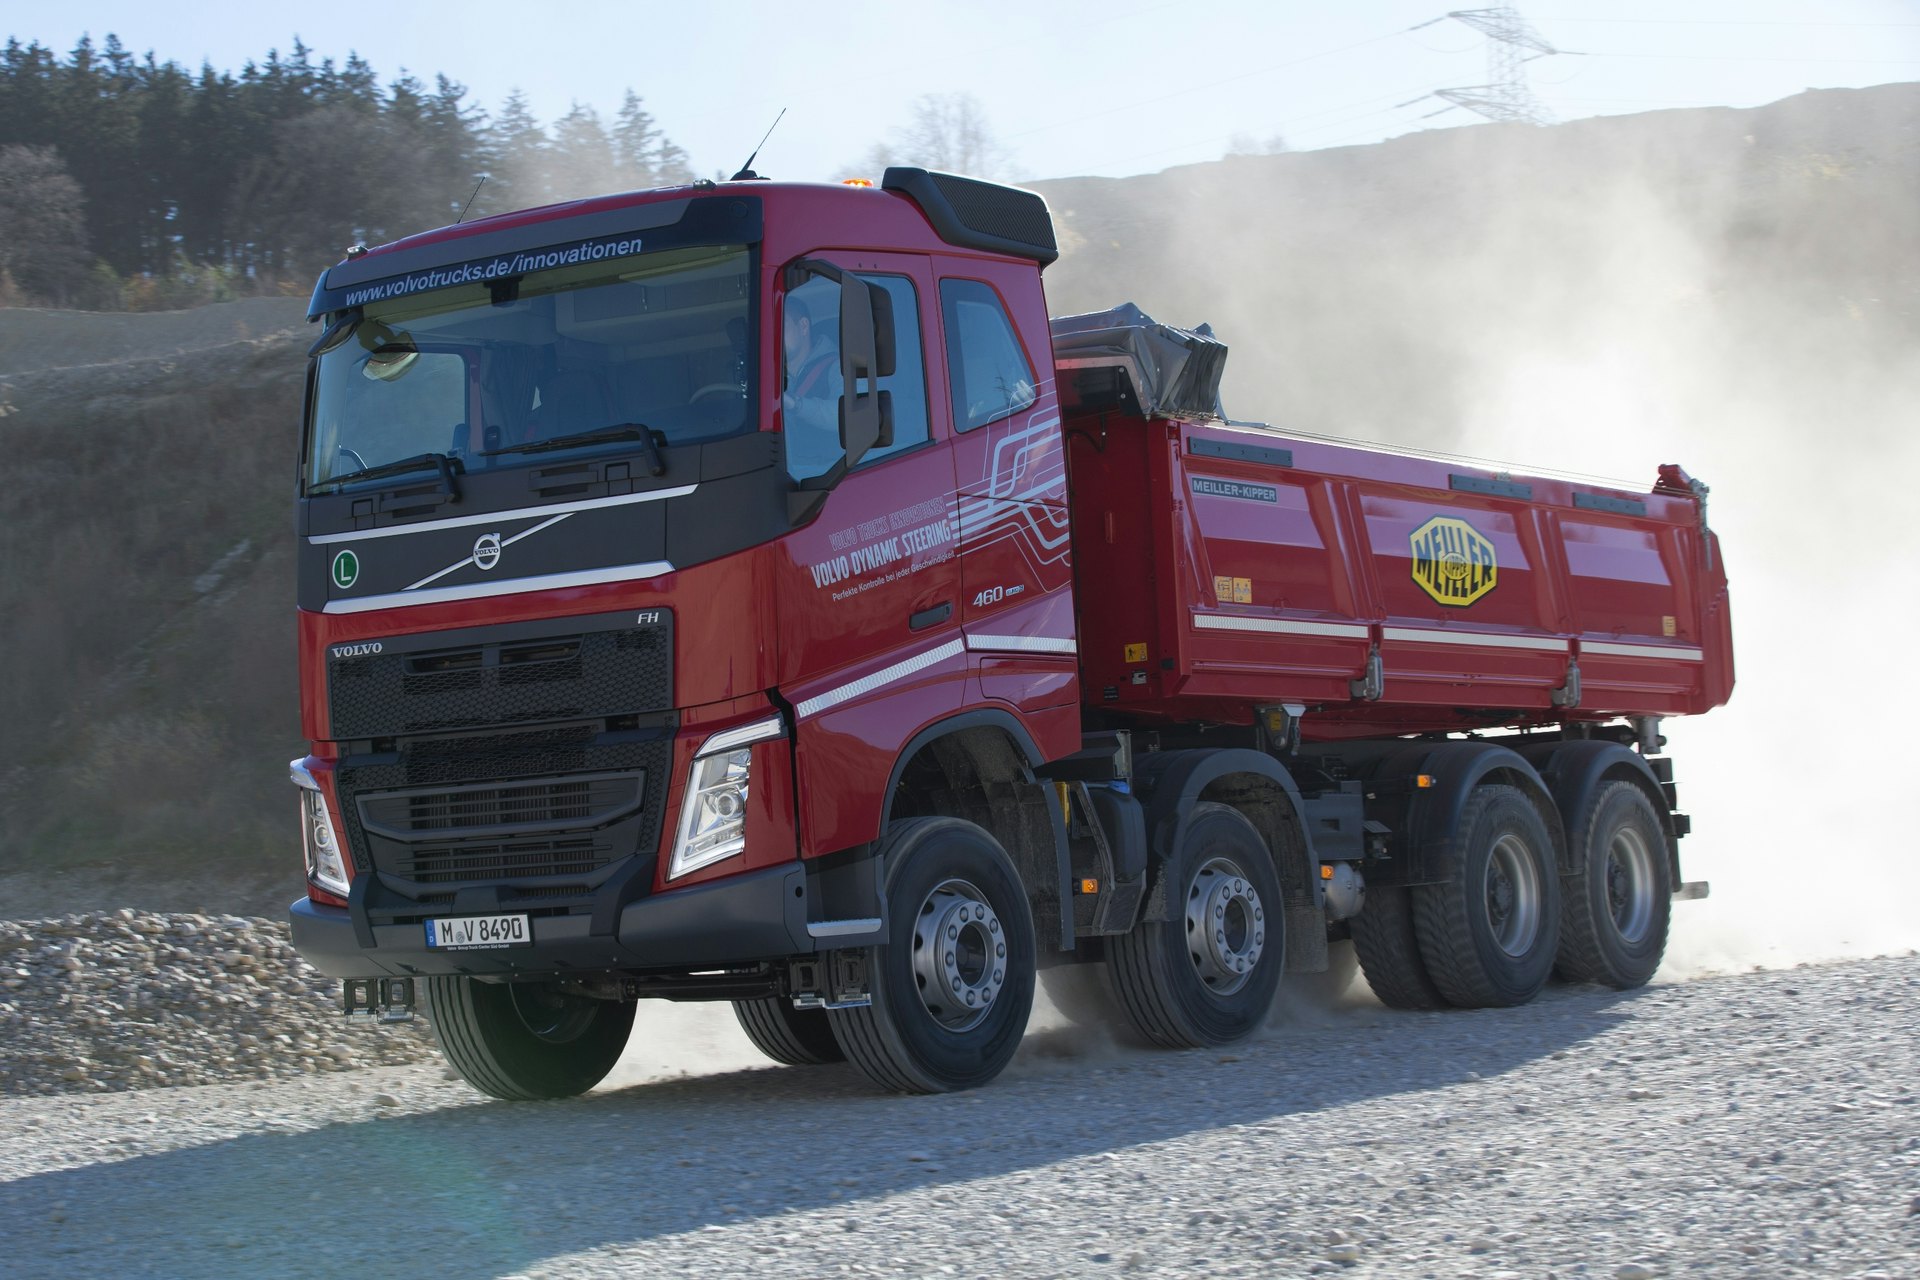 Volvo FMX 460 Tipper Truck New Tipper Truck - BAS World